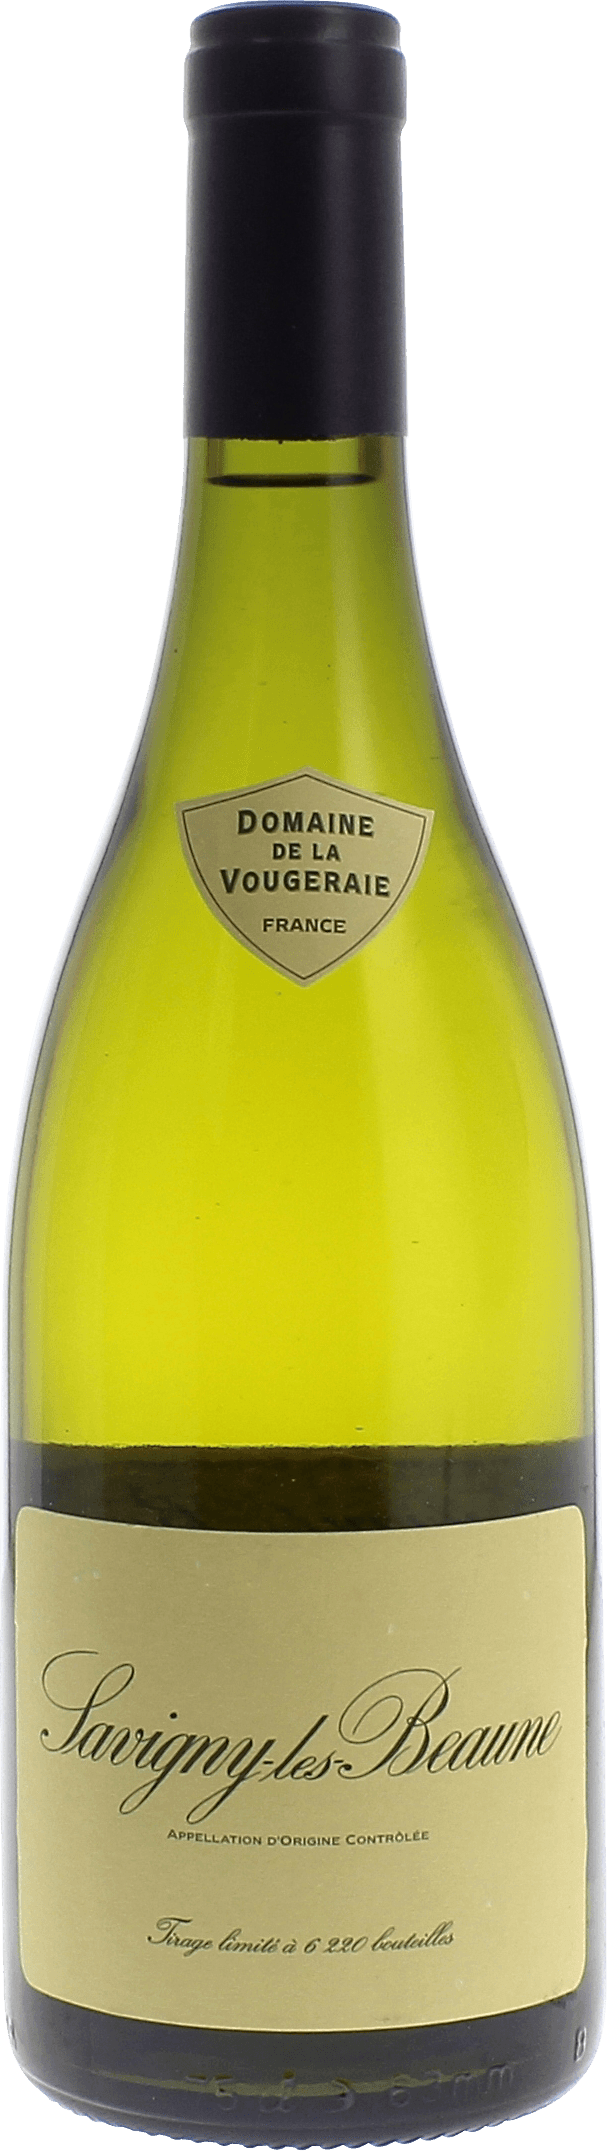 Savigny les beaune 2017 Domaine VOUGERAIE, Bourgogne blanc